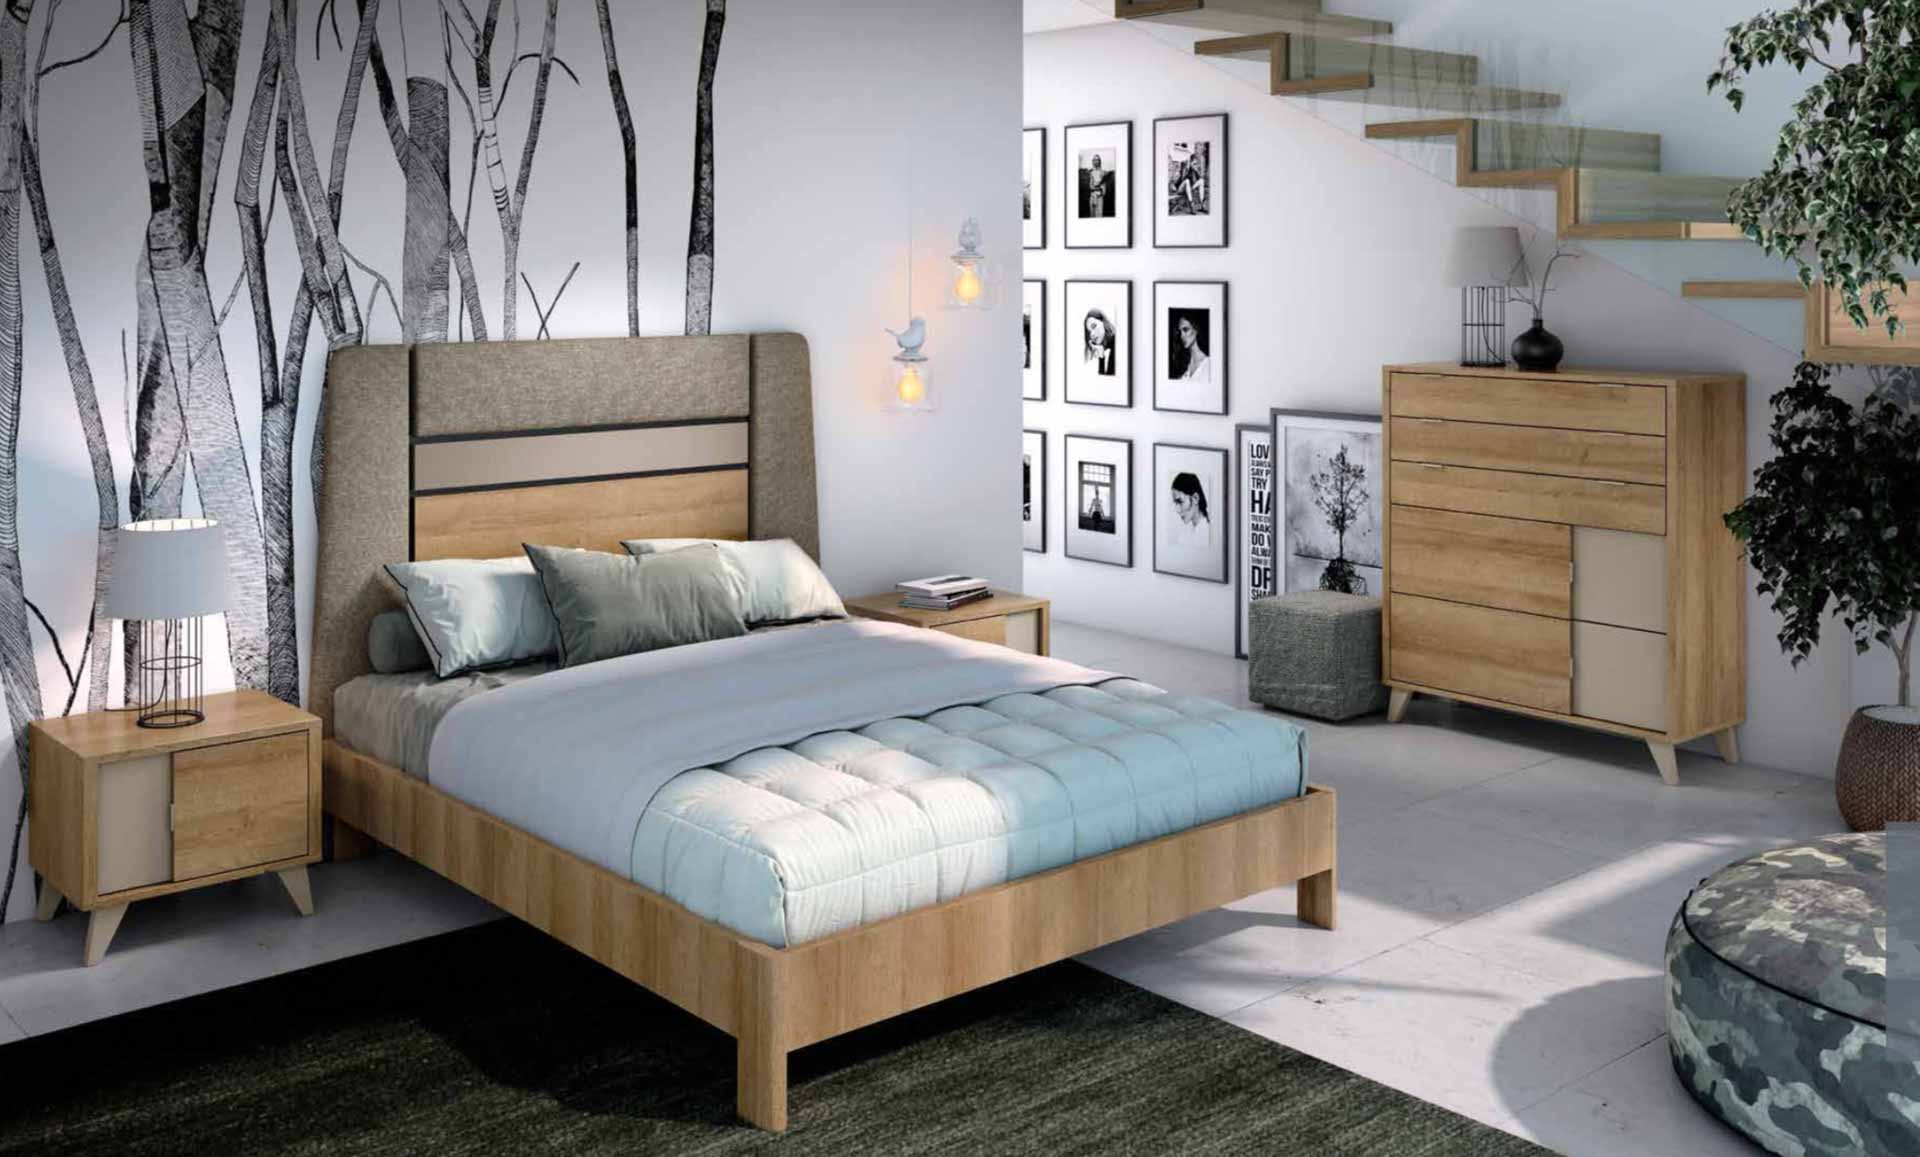 Diseño de mobiliario de dormitorio 36